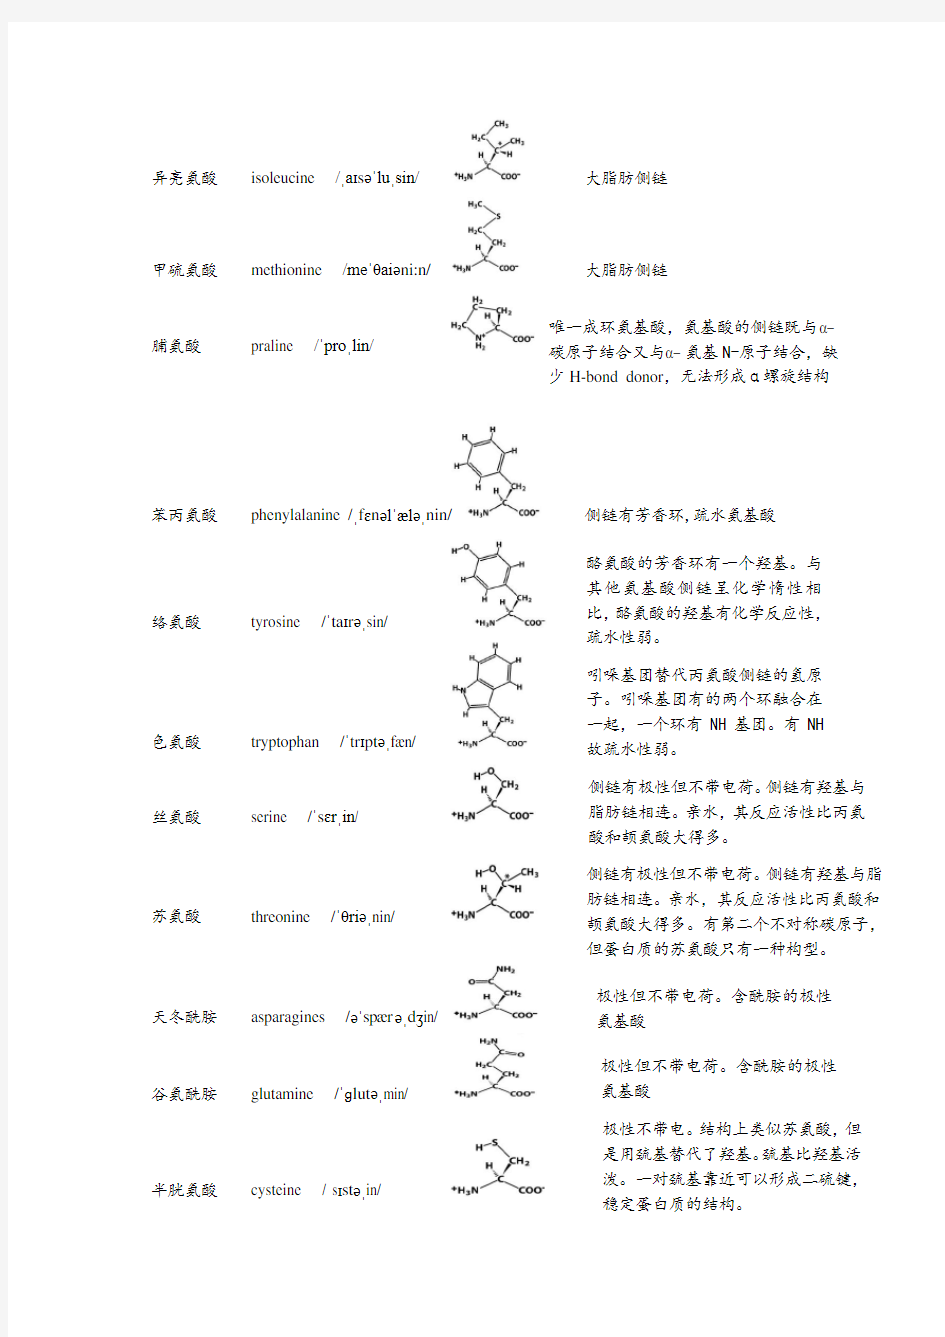 碱基、核苷、核苷酸、20种氨基酸中英文名称对照